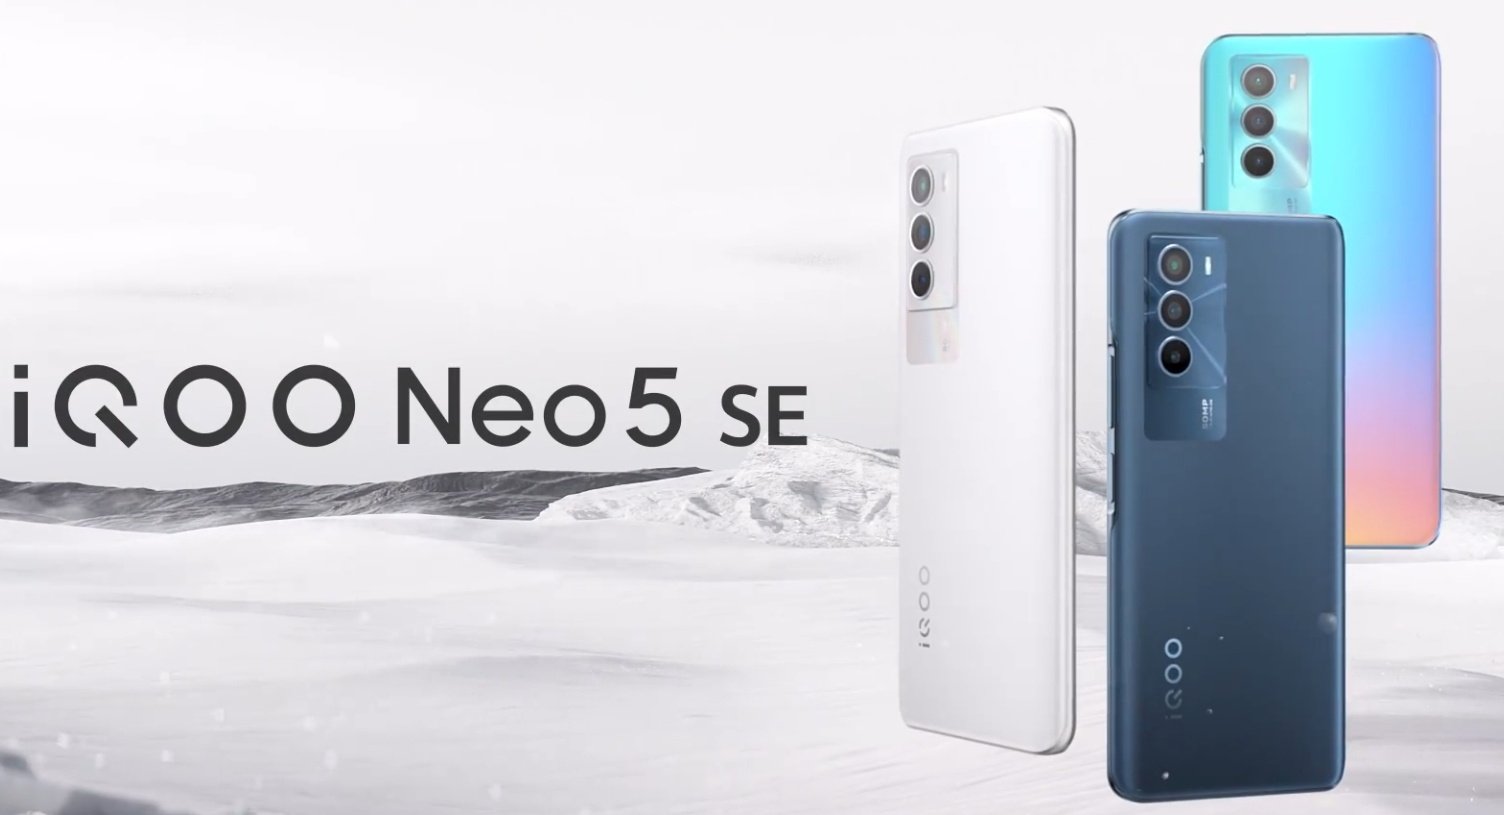 iQOO Neo 5 SE obtient la date d'annonce - Snapdragon 778G +, appareil photo 50MP, écran AMOLED et charge 66W